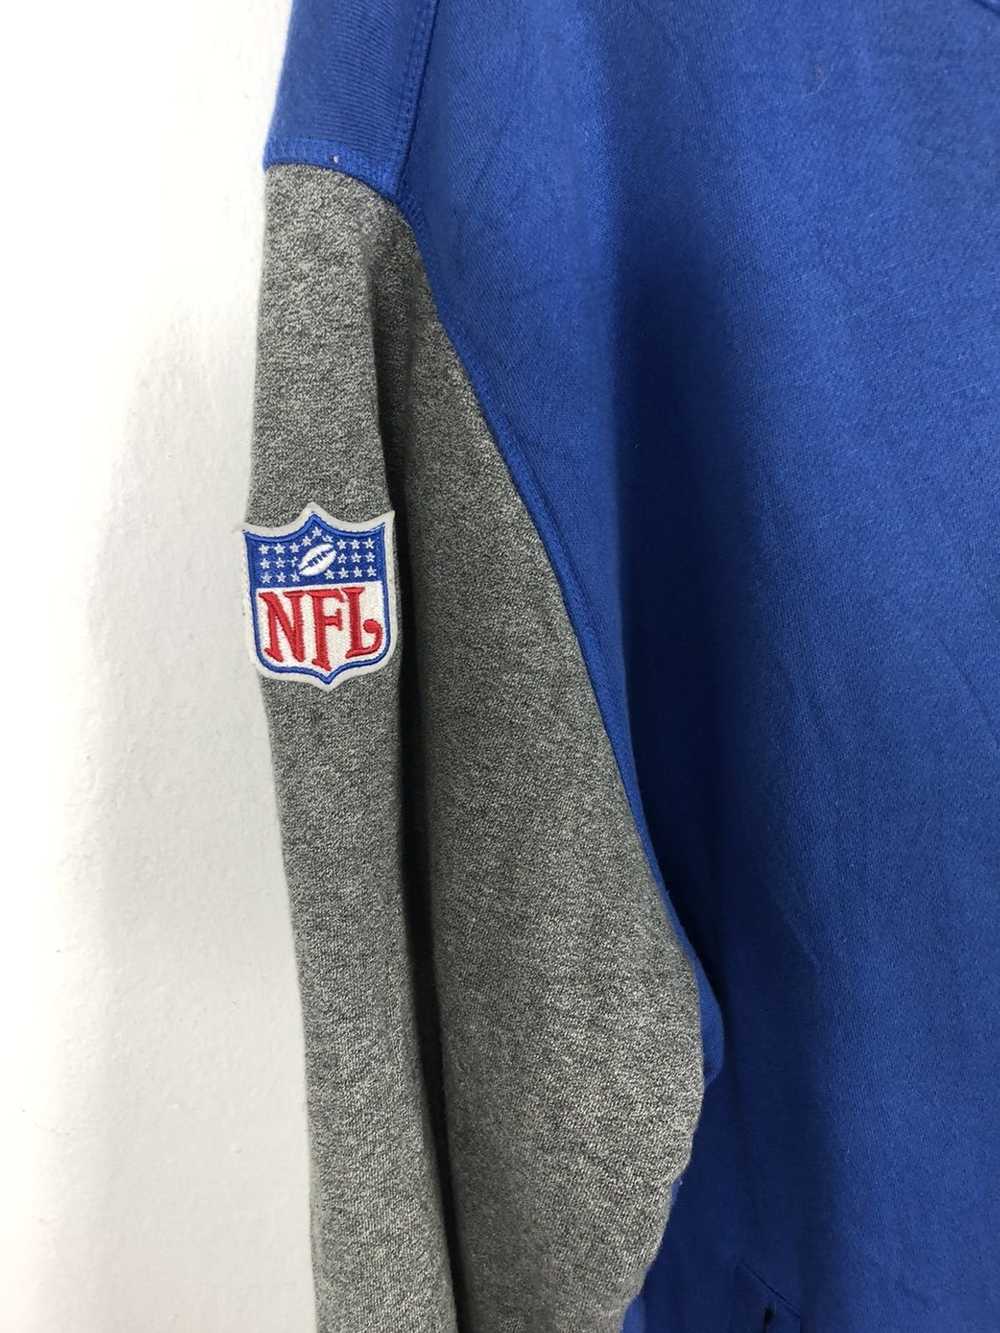 NFL × Reebok Reebok x NFL Varsity Jacket - image 3